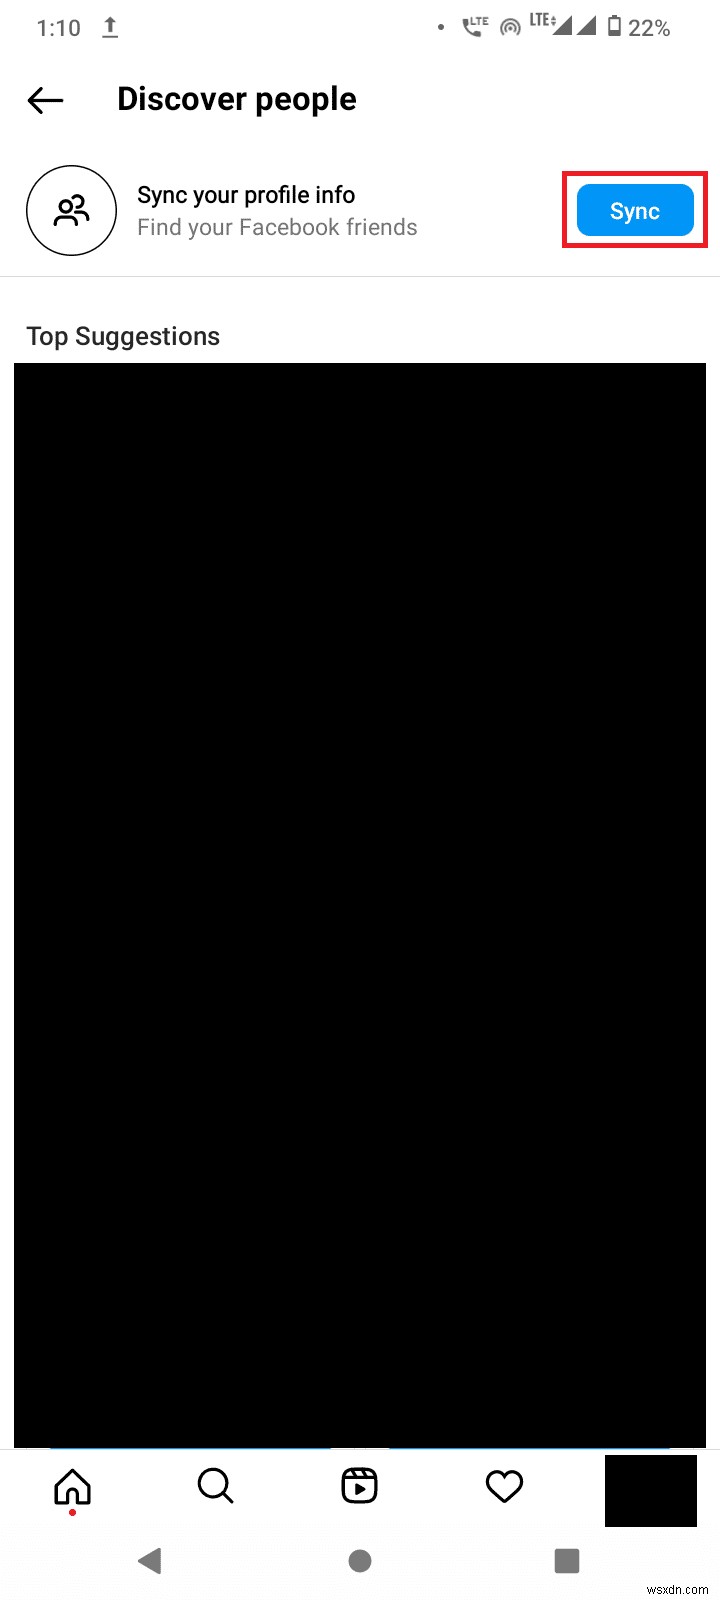 নাম এবং অবস্থান অনুসারে ইনস্টাগ্রাম ব্যবহারকারীদের অনুসন্ধান করার শীর্ষ 10টি পদ্ধতি